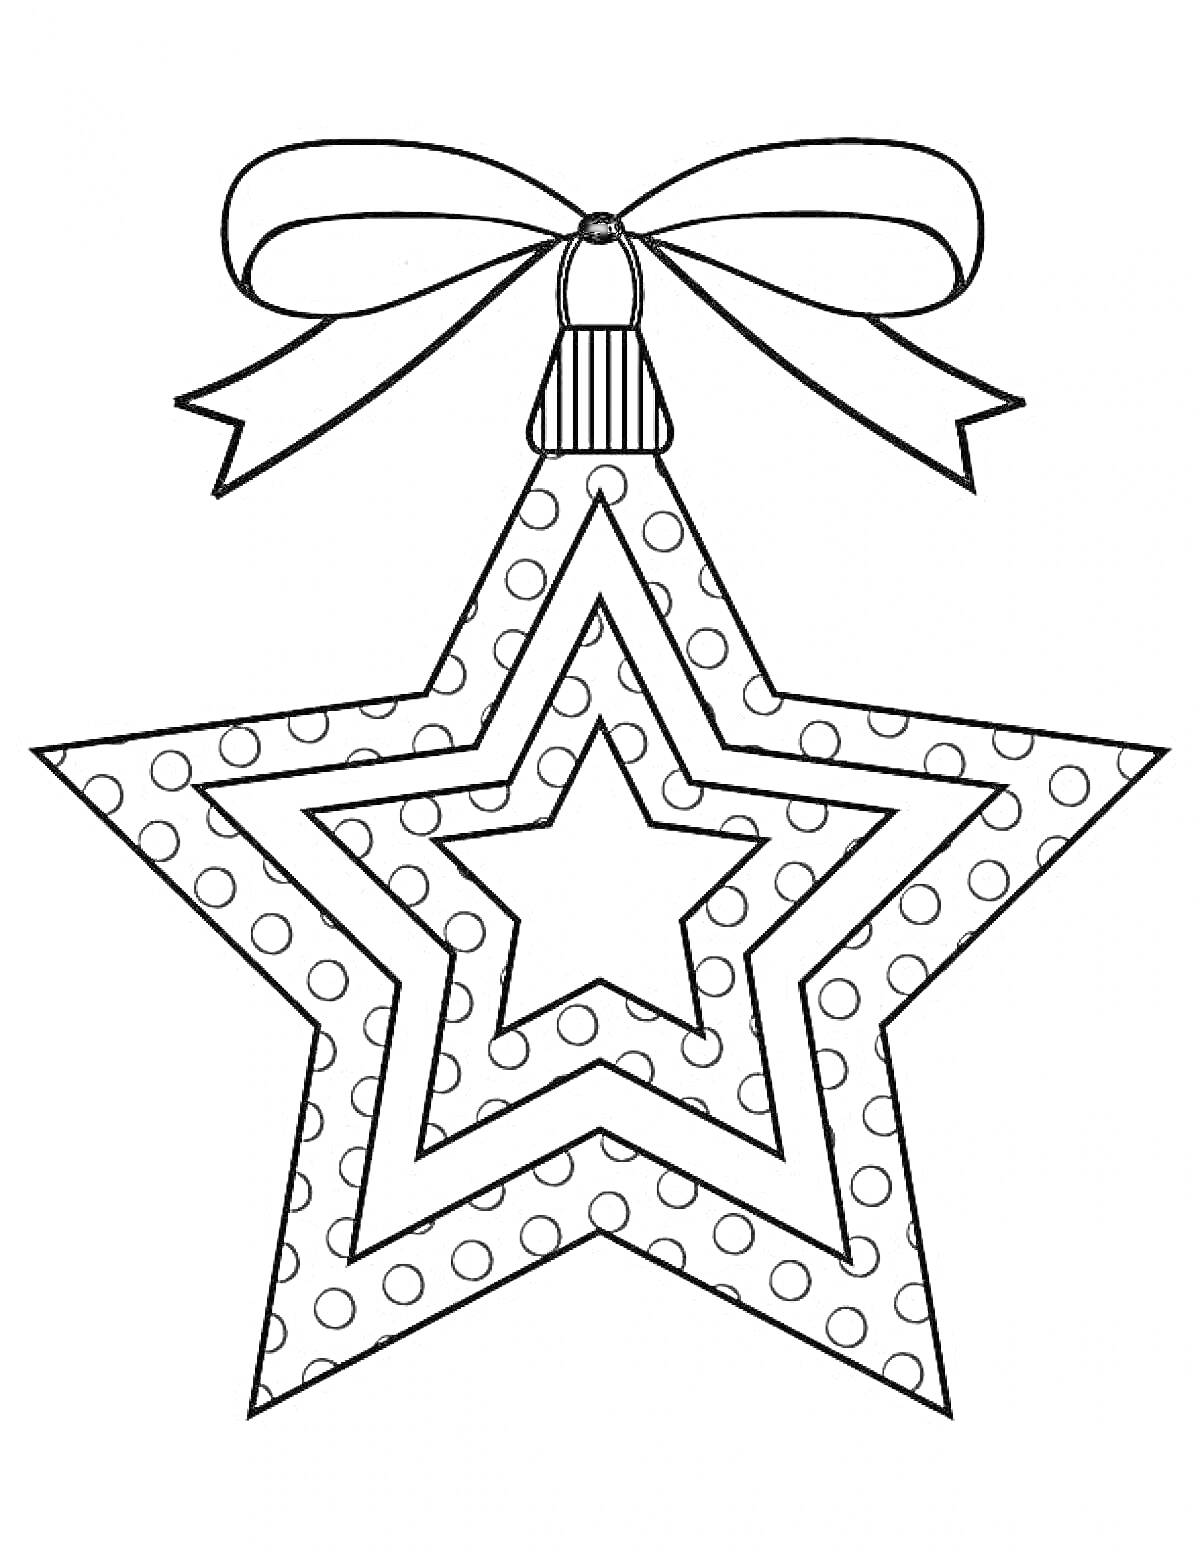 Раскраска Рождественская звезда с бантами, узорами и точками